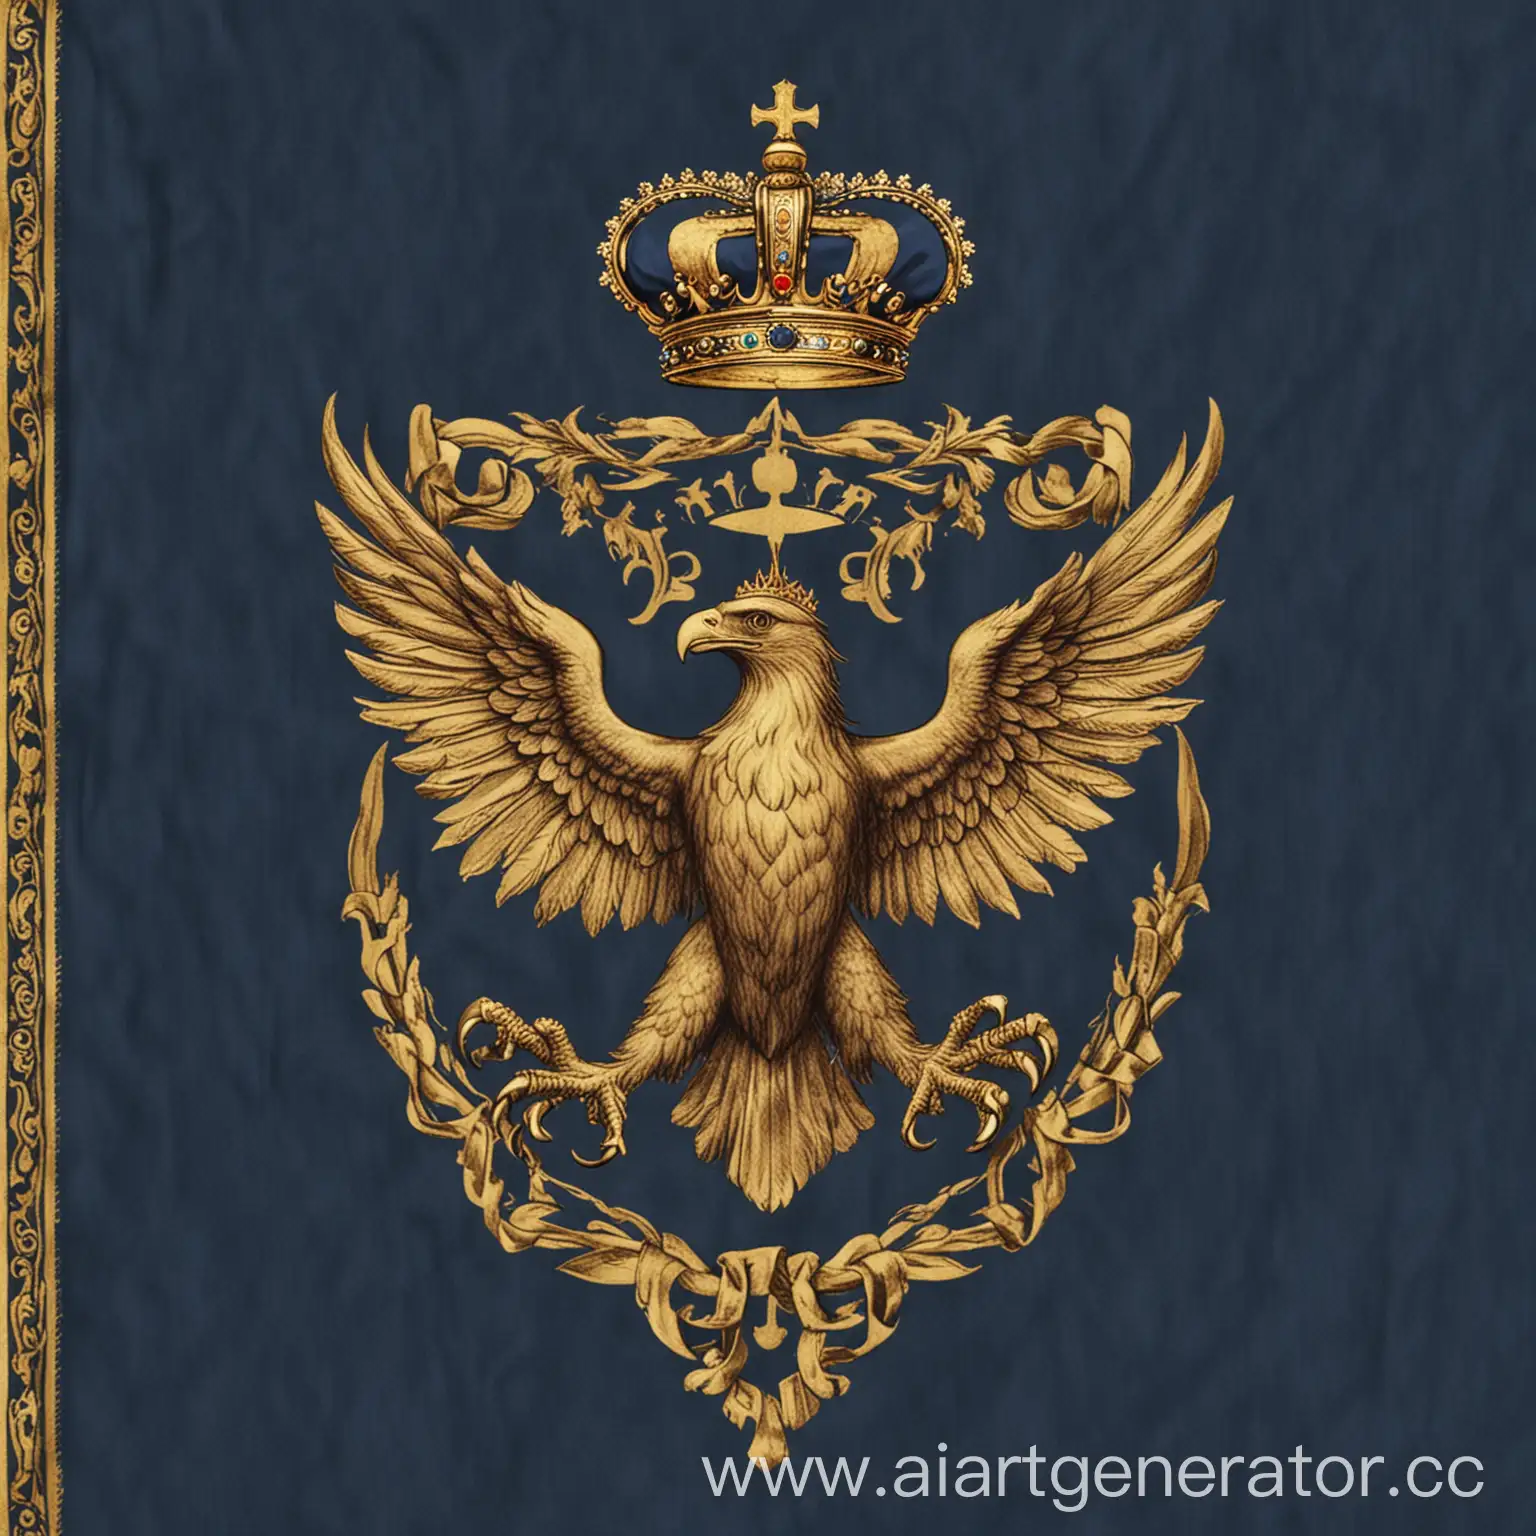 Флаг Авалонии может быть синим с изображением золотой короны в центре и двумя золотыми орлами, расположенными по обе стороны от короны.